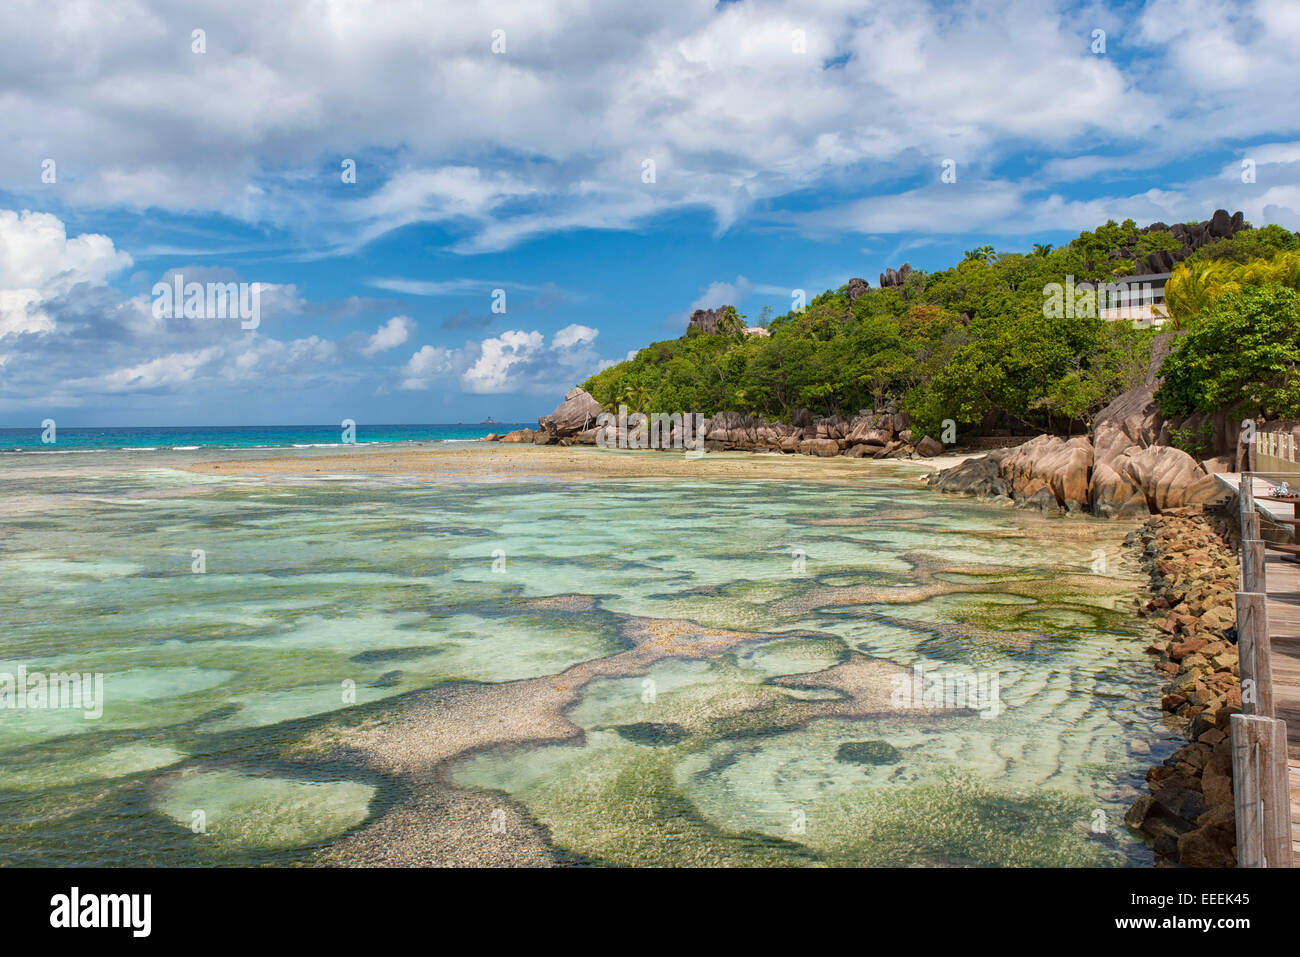 Le Domaine de L'Orangeraie Resort in La Digue, Seychelles Stock Photo